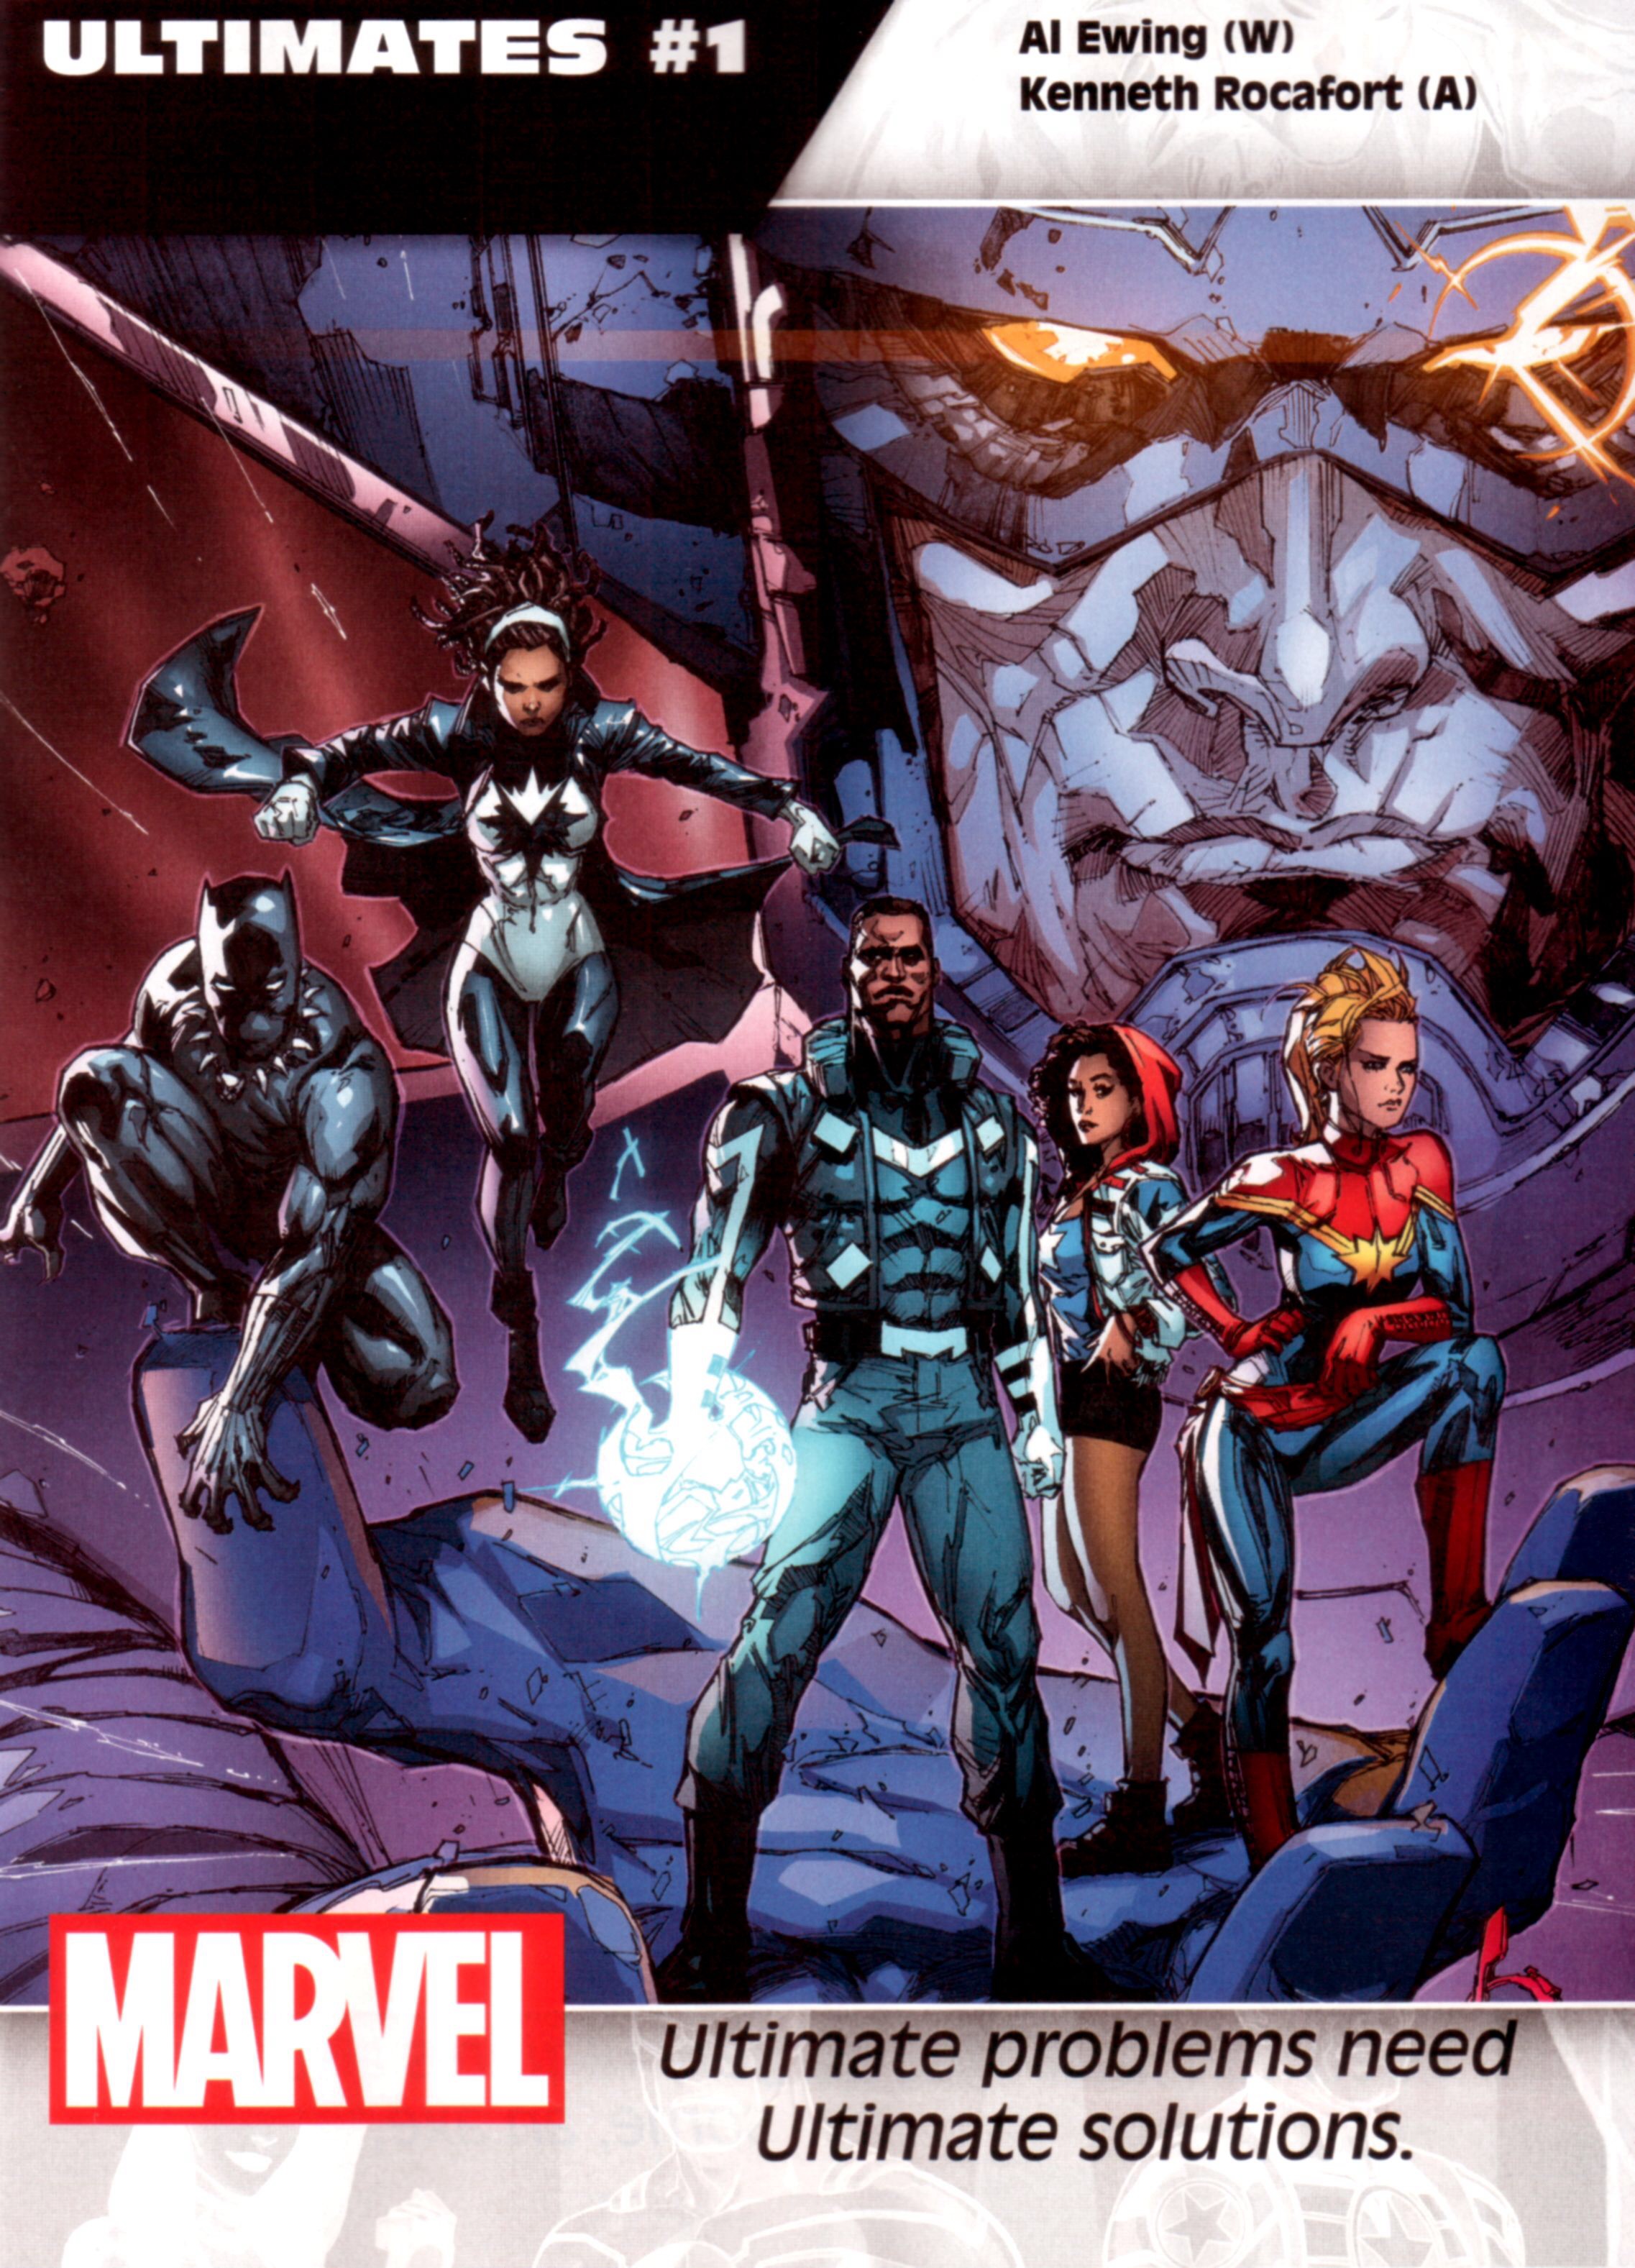 Personajes y series del nuevo universo Marvel